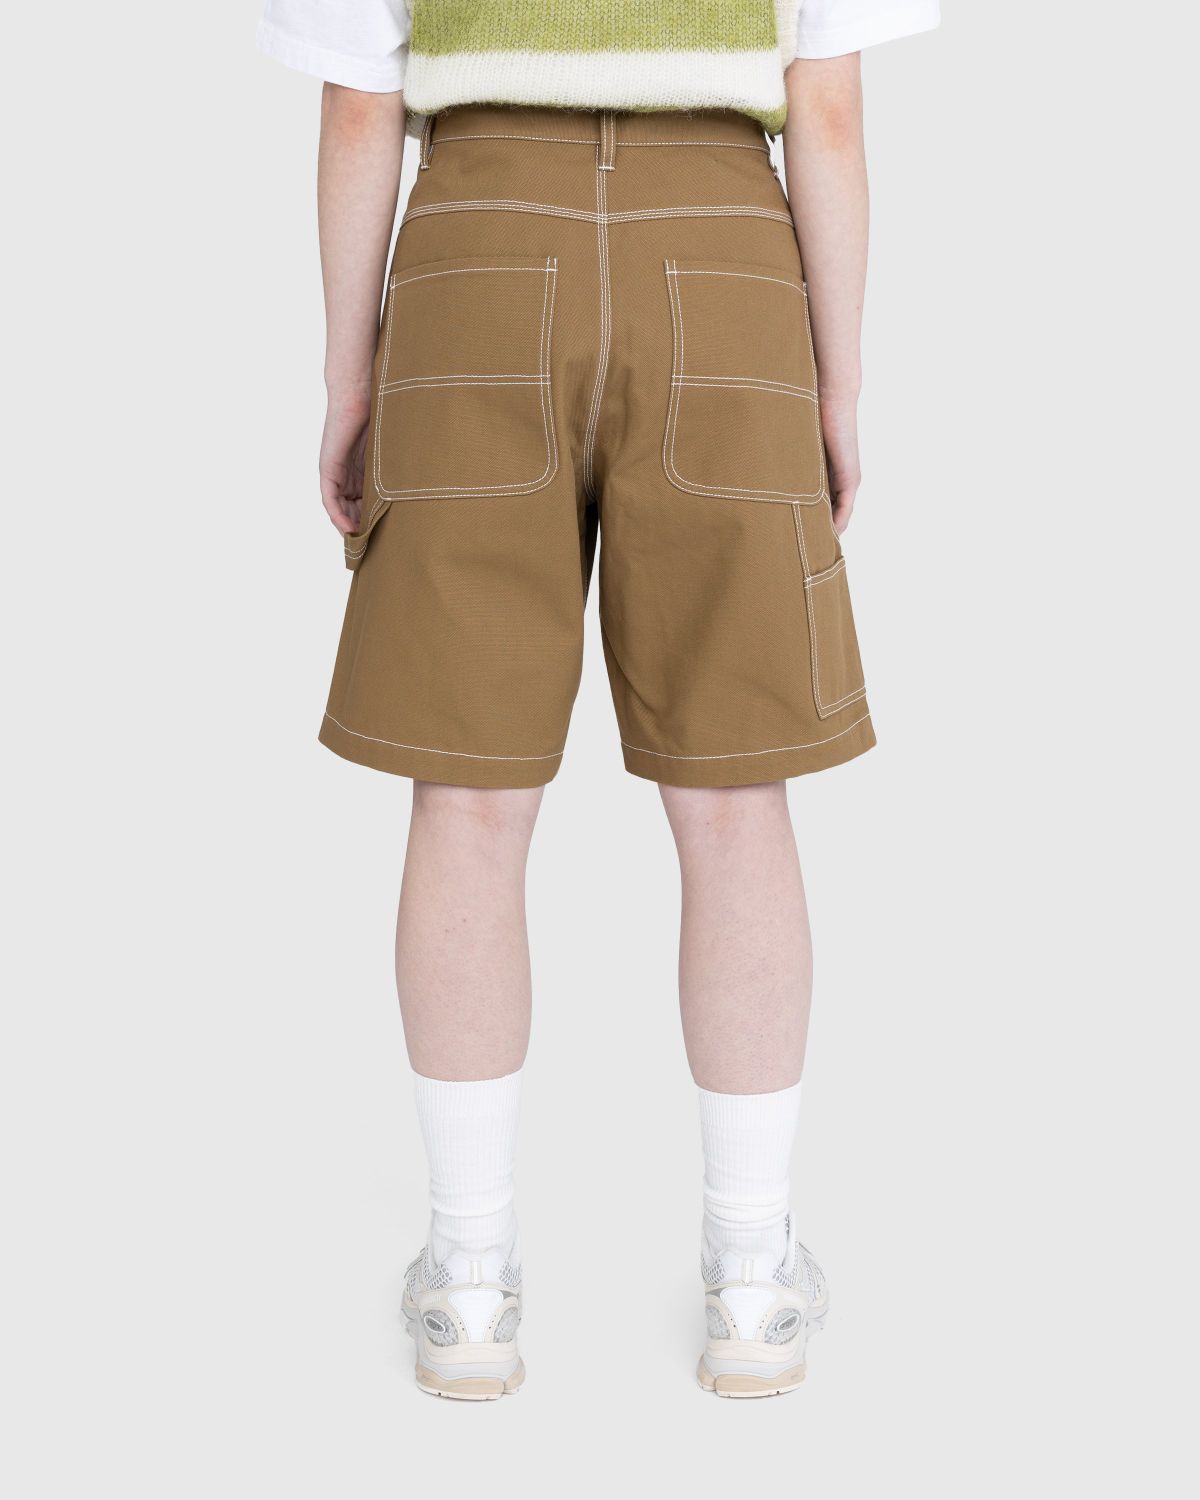 Highsnobiety – Carpenter Shorts Dark Beige - Shorts - Brown - Image 3